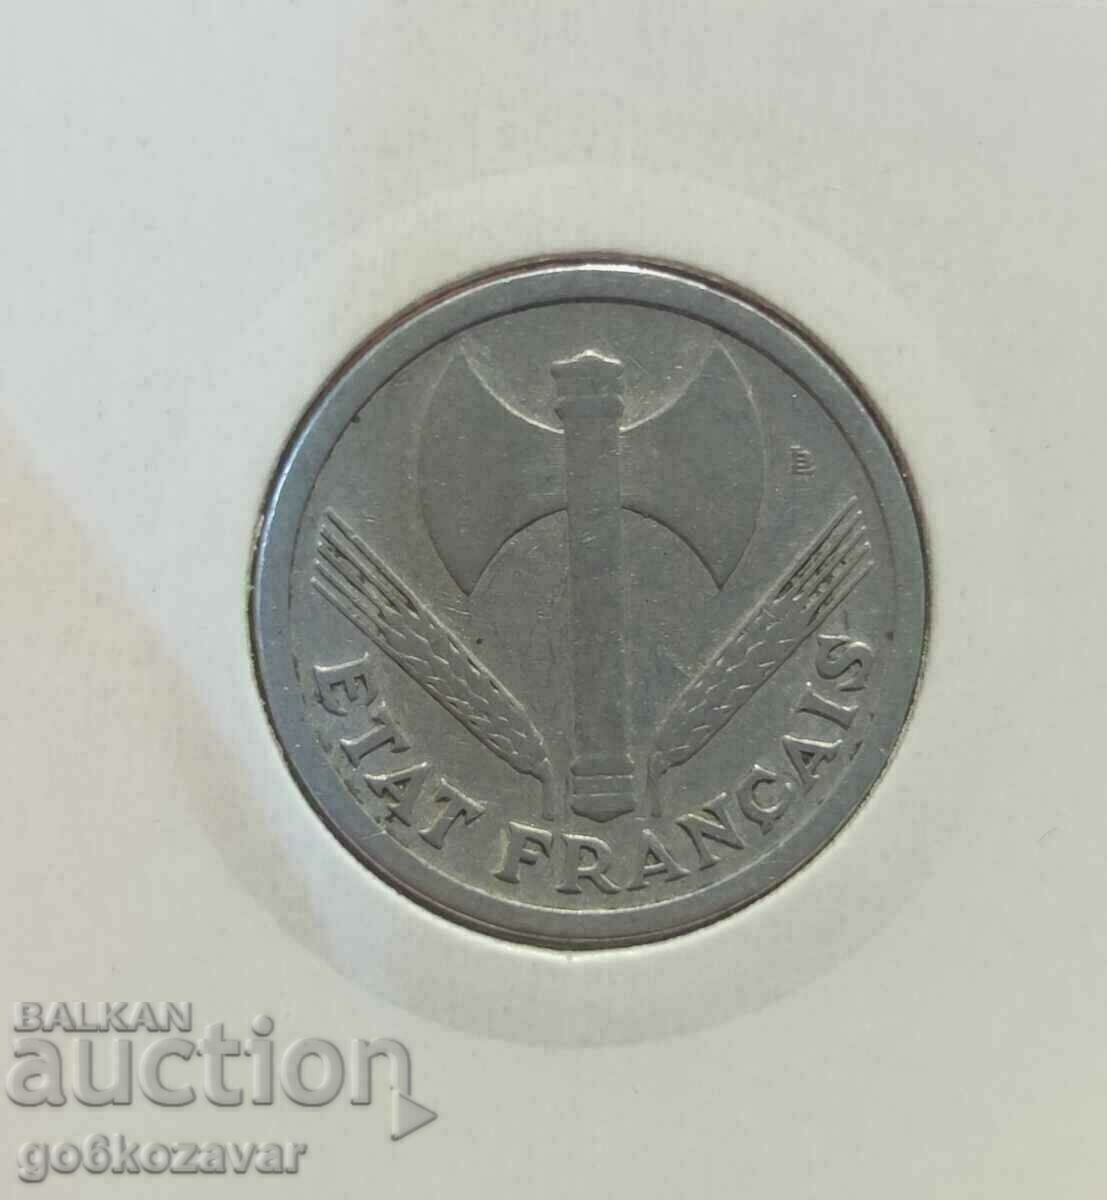 France 2 francs 1943